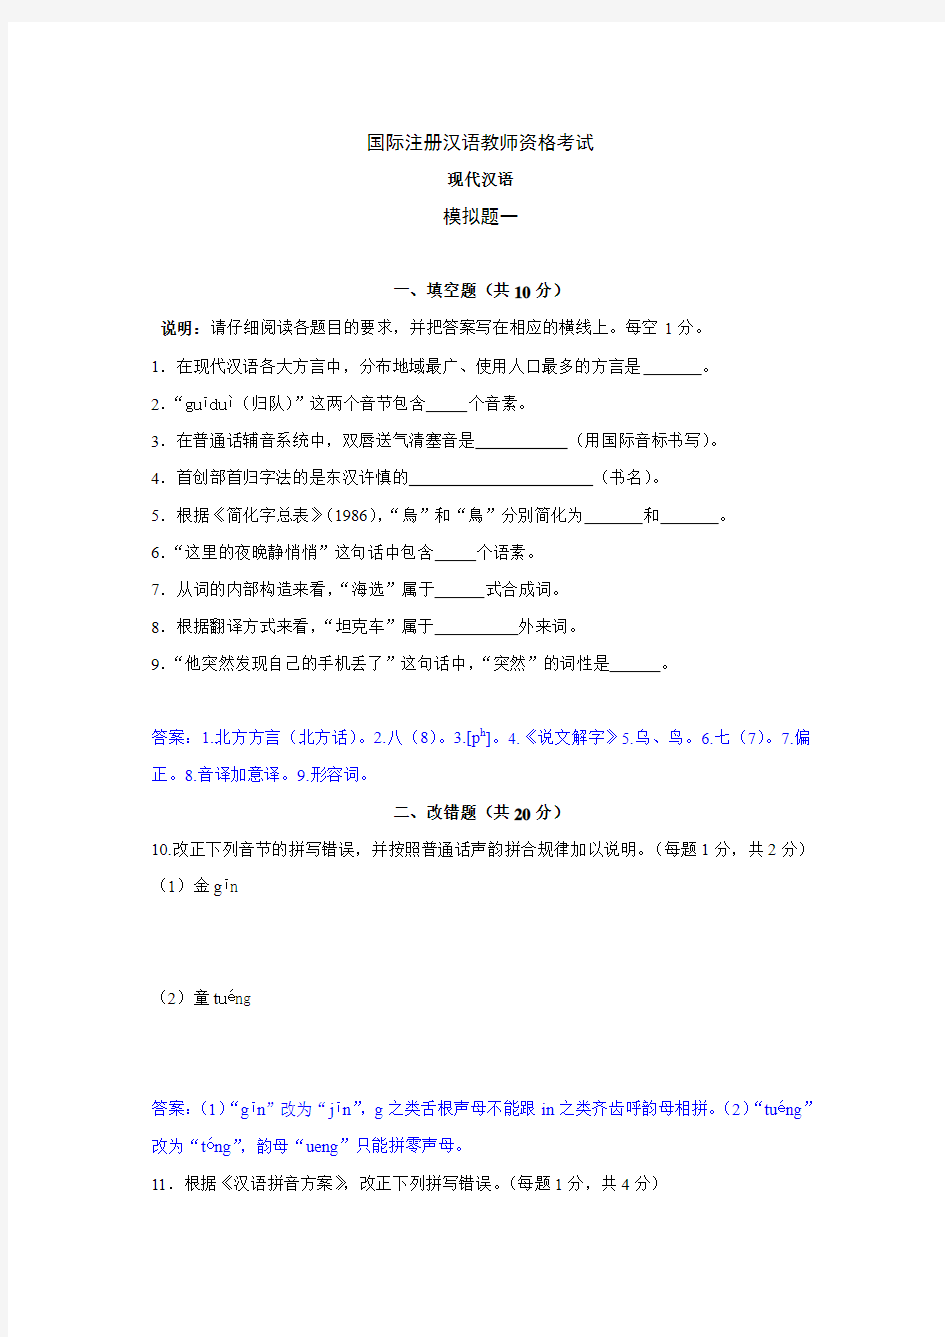 2016年6月IPA国际注册汉语教师资格证现代汉语模拟题试题